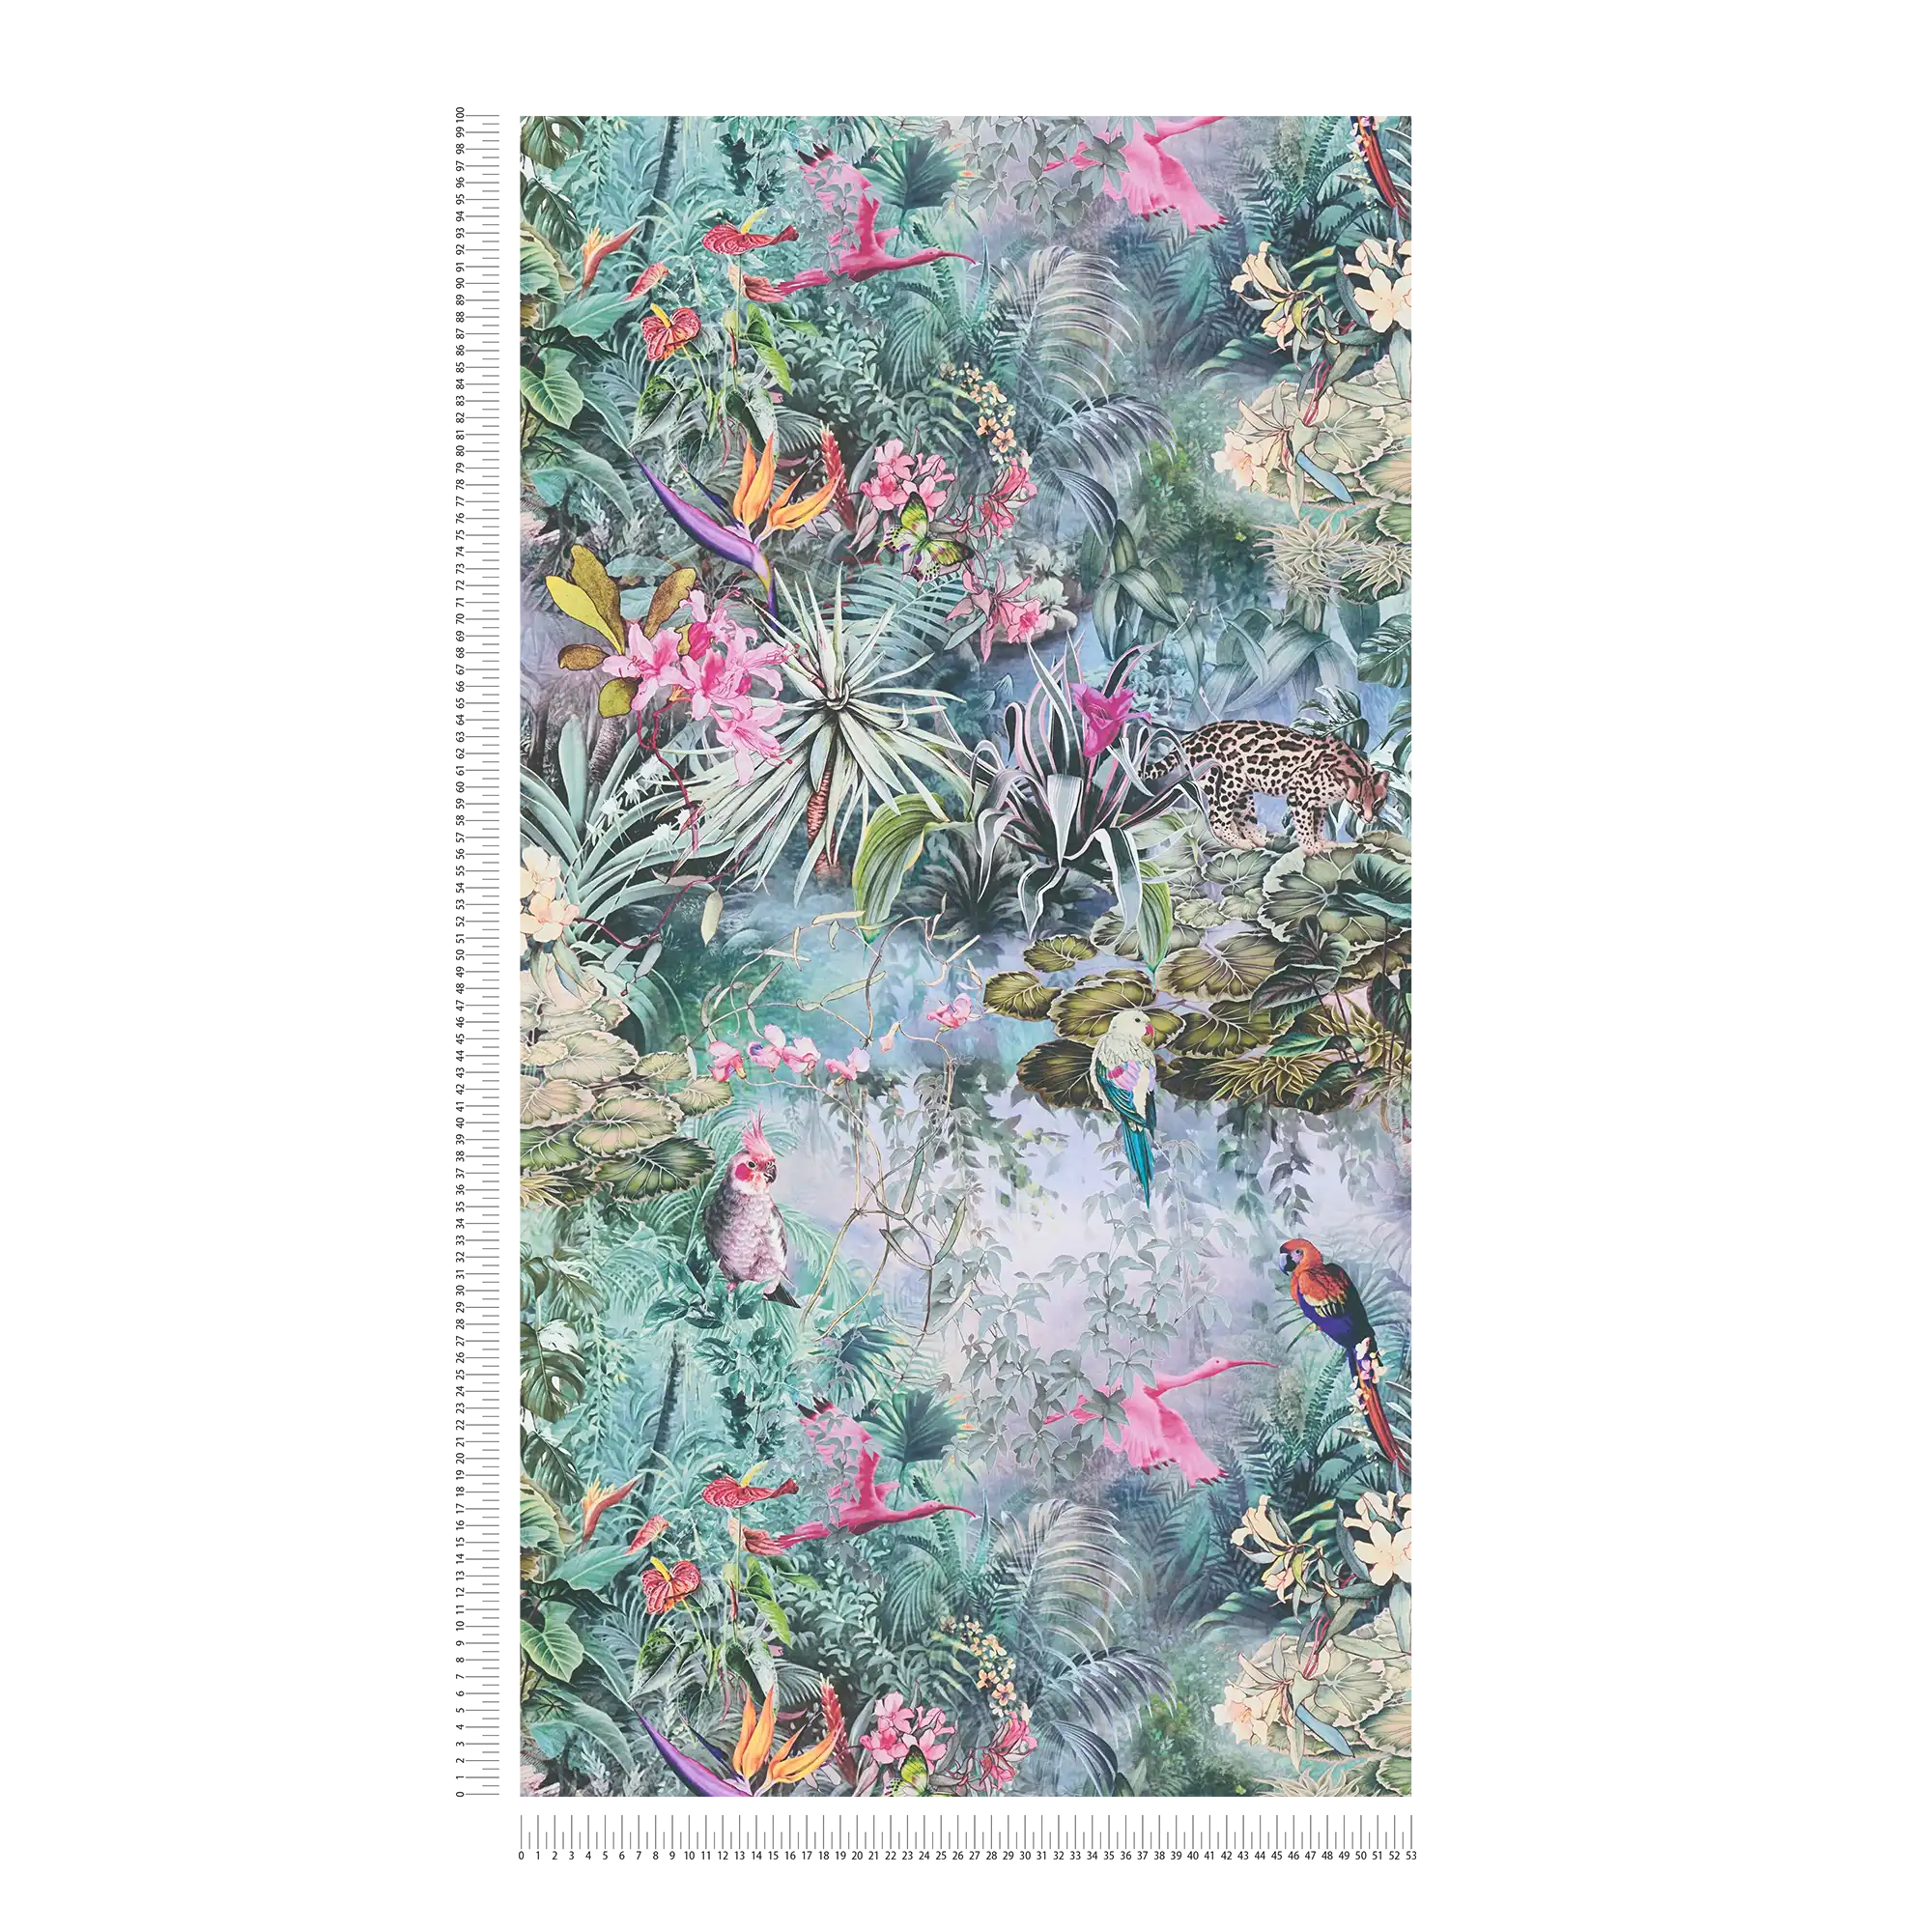             Papier peint jungle Animaux & plantes en aquarelle
        